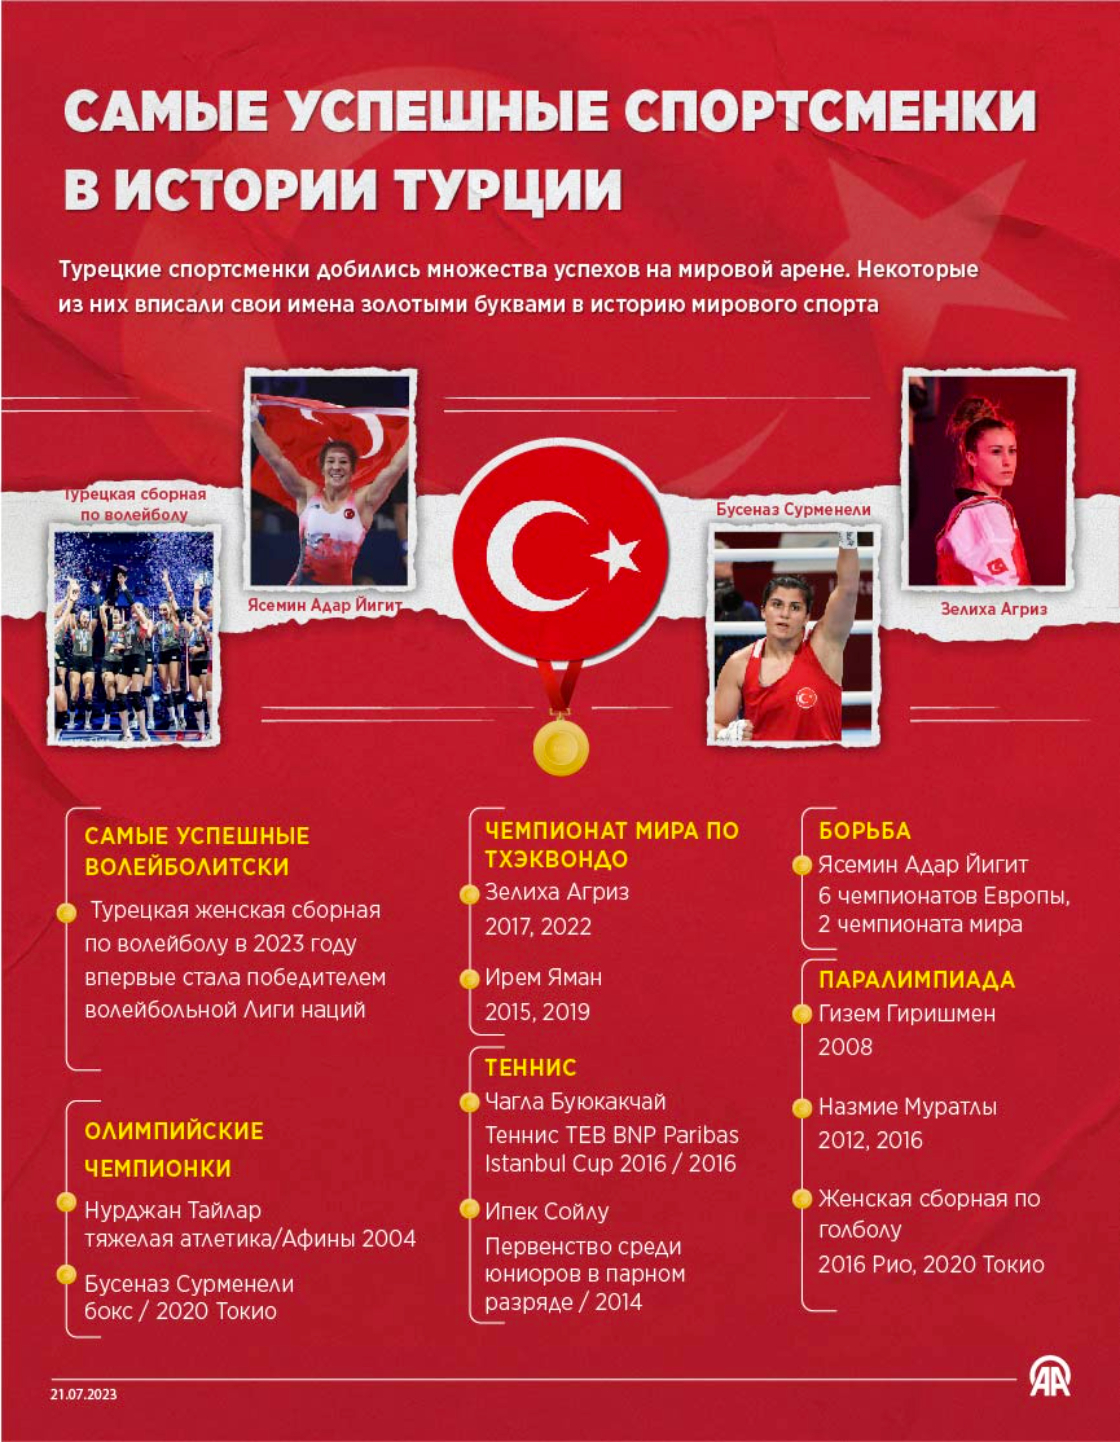 Самые успешные спортсменки в истории Турции